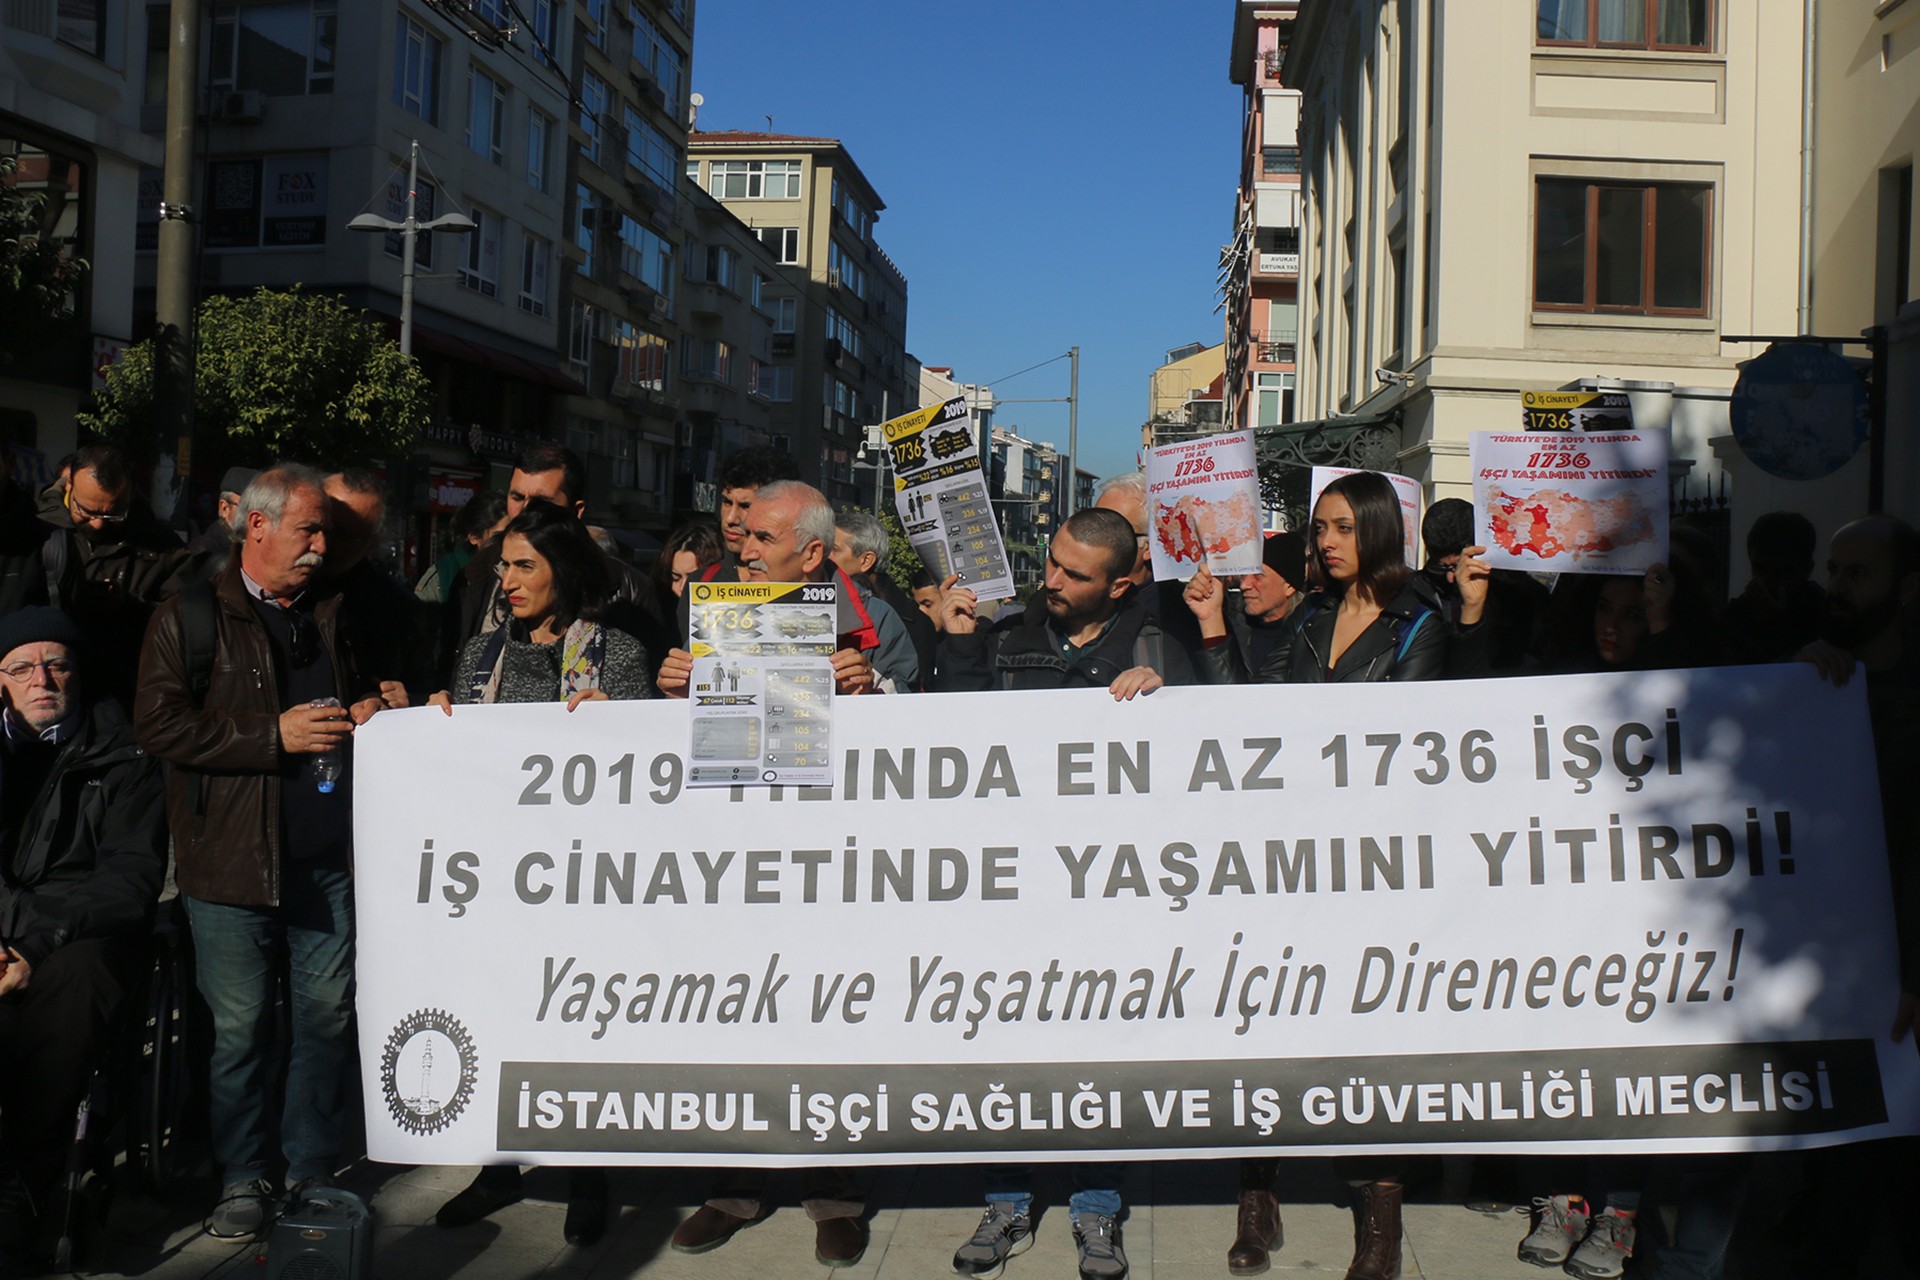 Türkiye'de 2019 yılında 1736 işçi yaşamını yitirdi yazısı